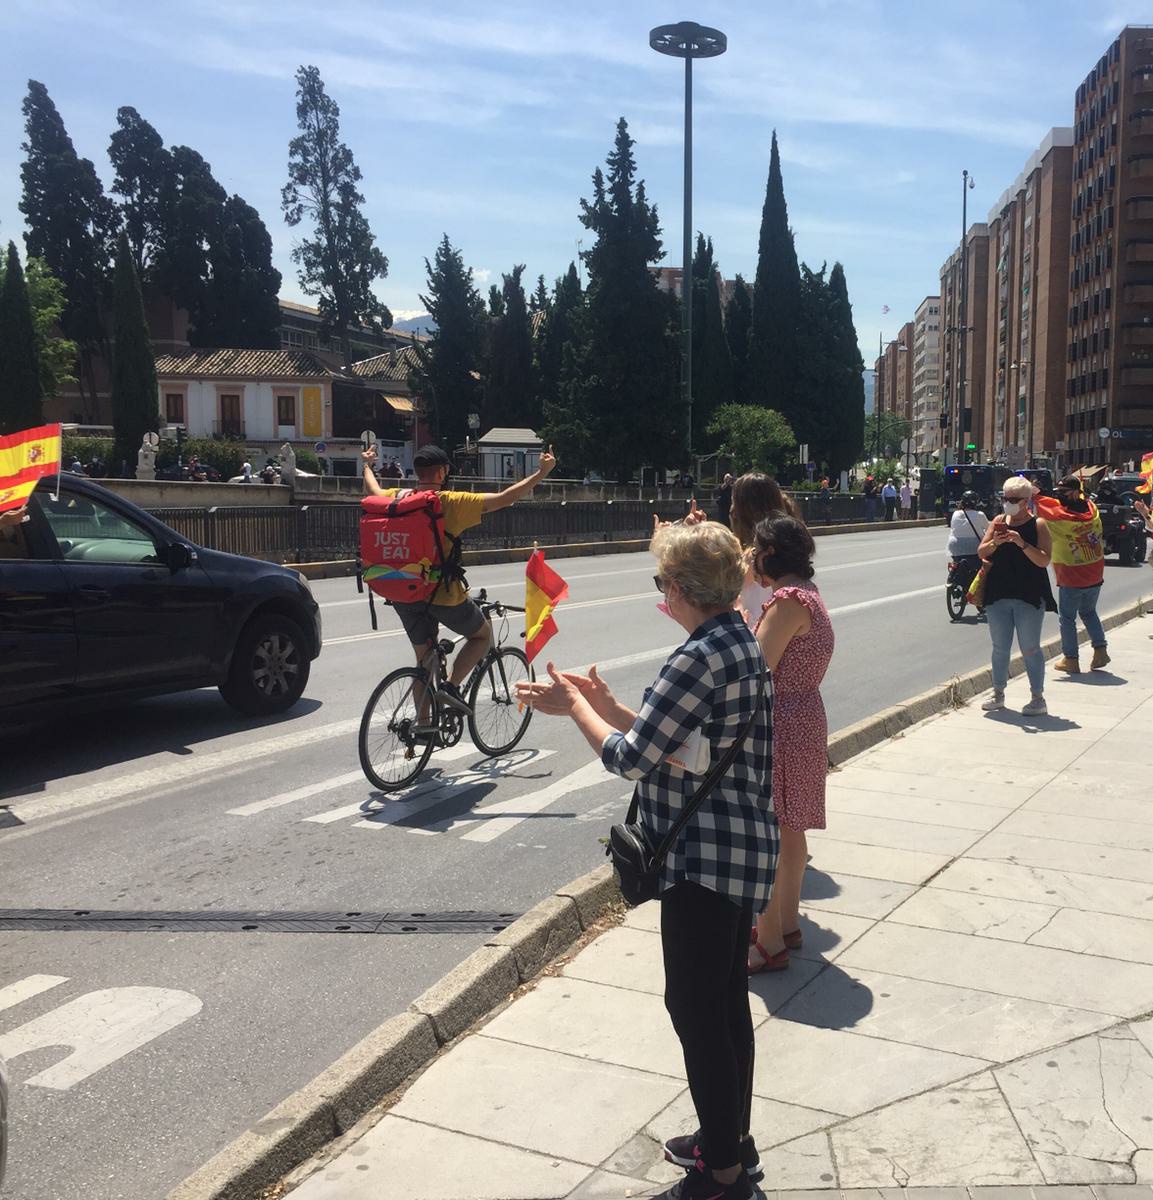 ✊ En Granada mientras repartidores trabajan a 30 °C.

🤮 Los ricos se manifiestan en sus cochazos con aire acondicionado.

El trabajador les ha dejado clara su opinión 🖕

Tu #DeQueLadoEstas